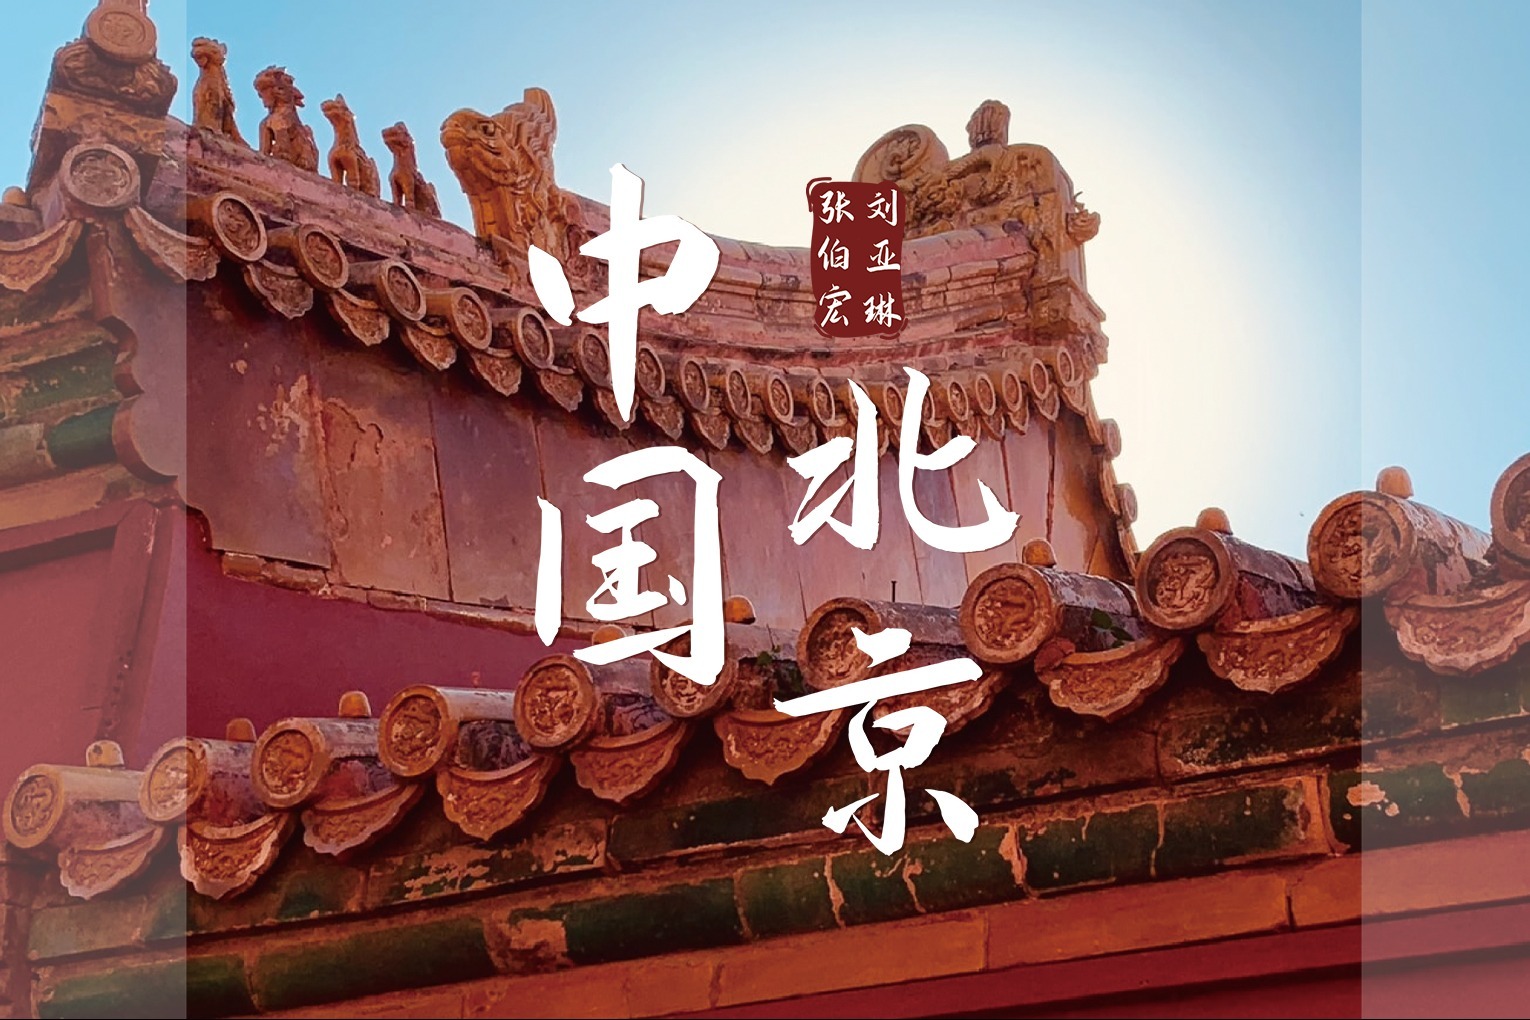 张伯宏&刘亚琳新单曲《中国北京》今日上线 引领多元素红歌风潮 